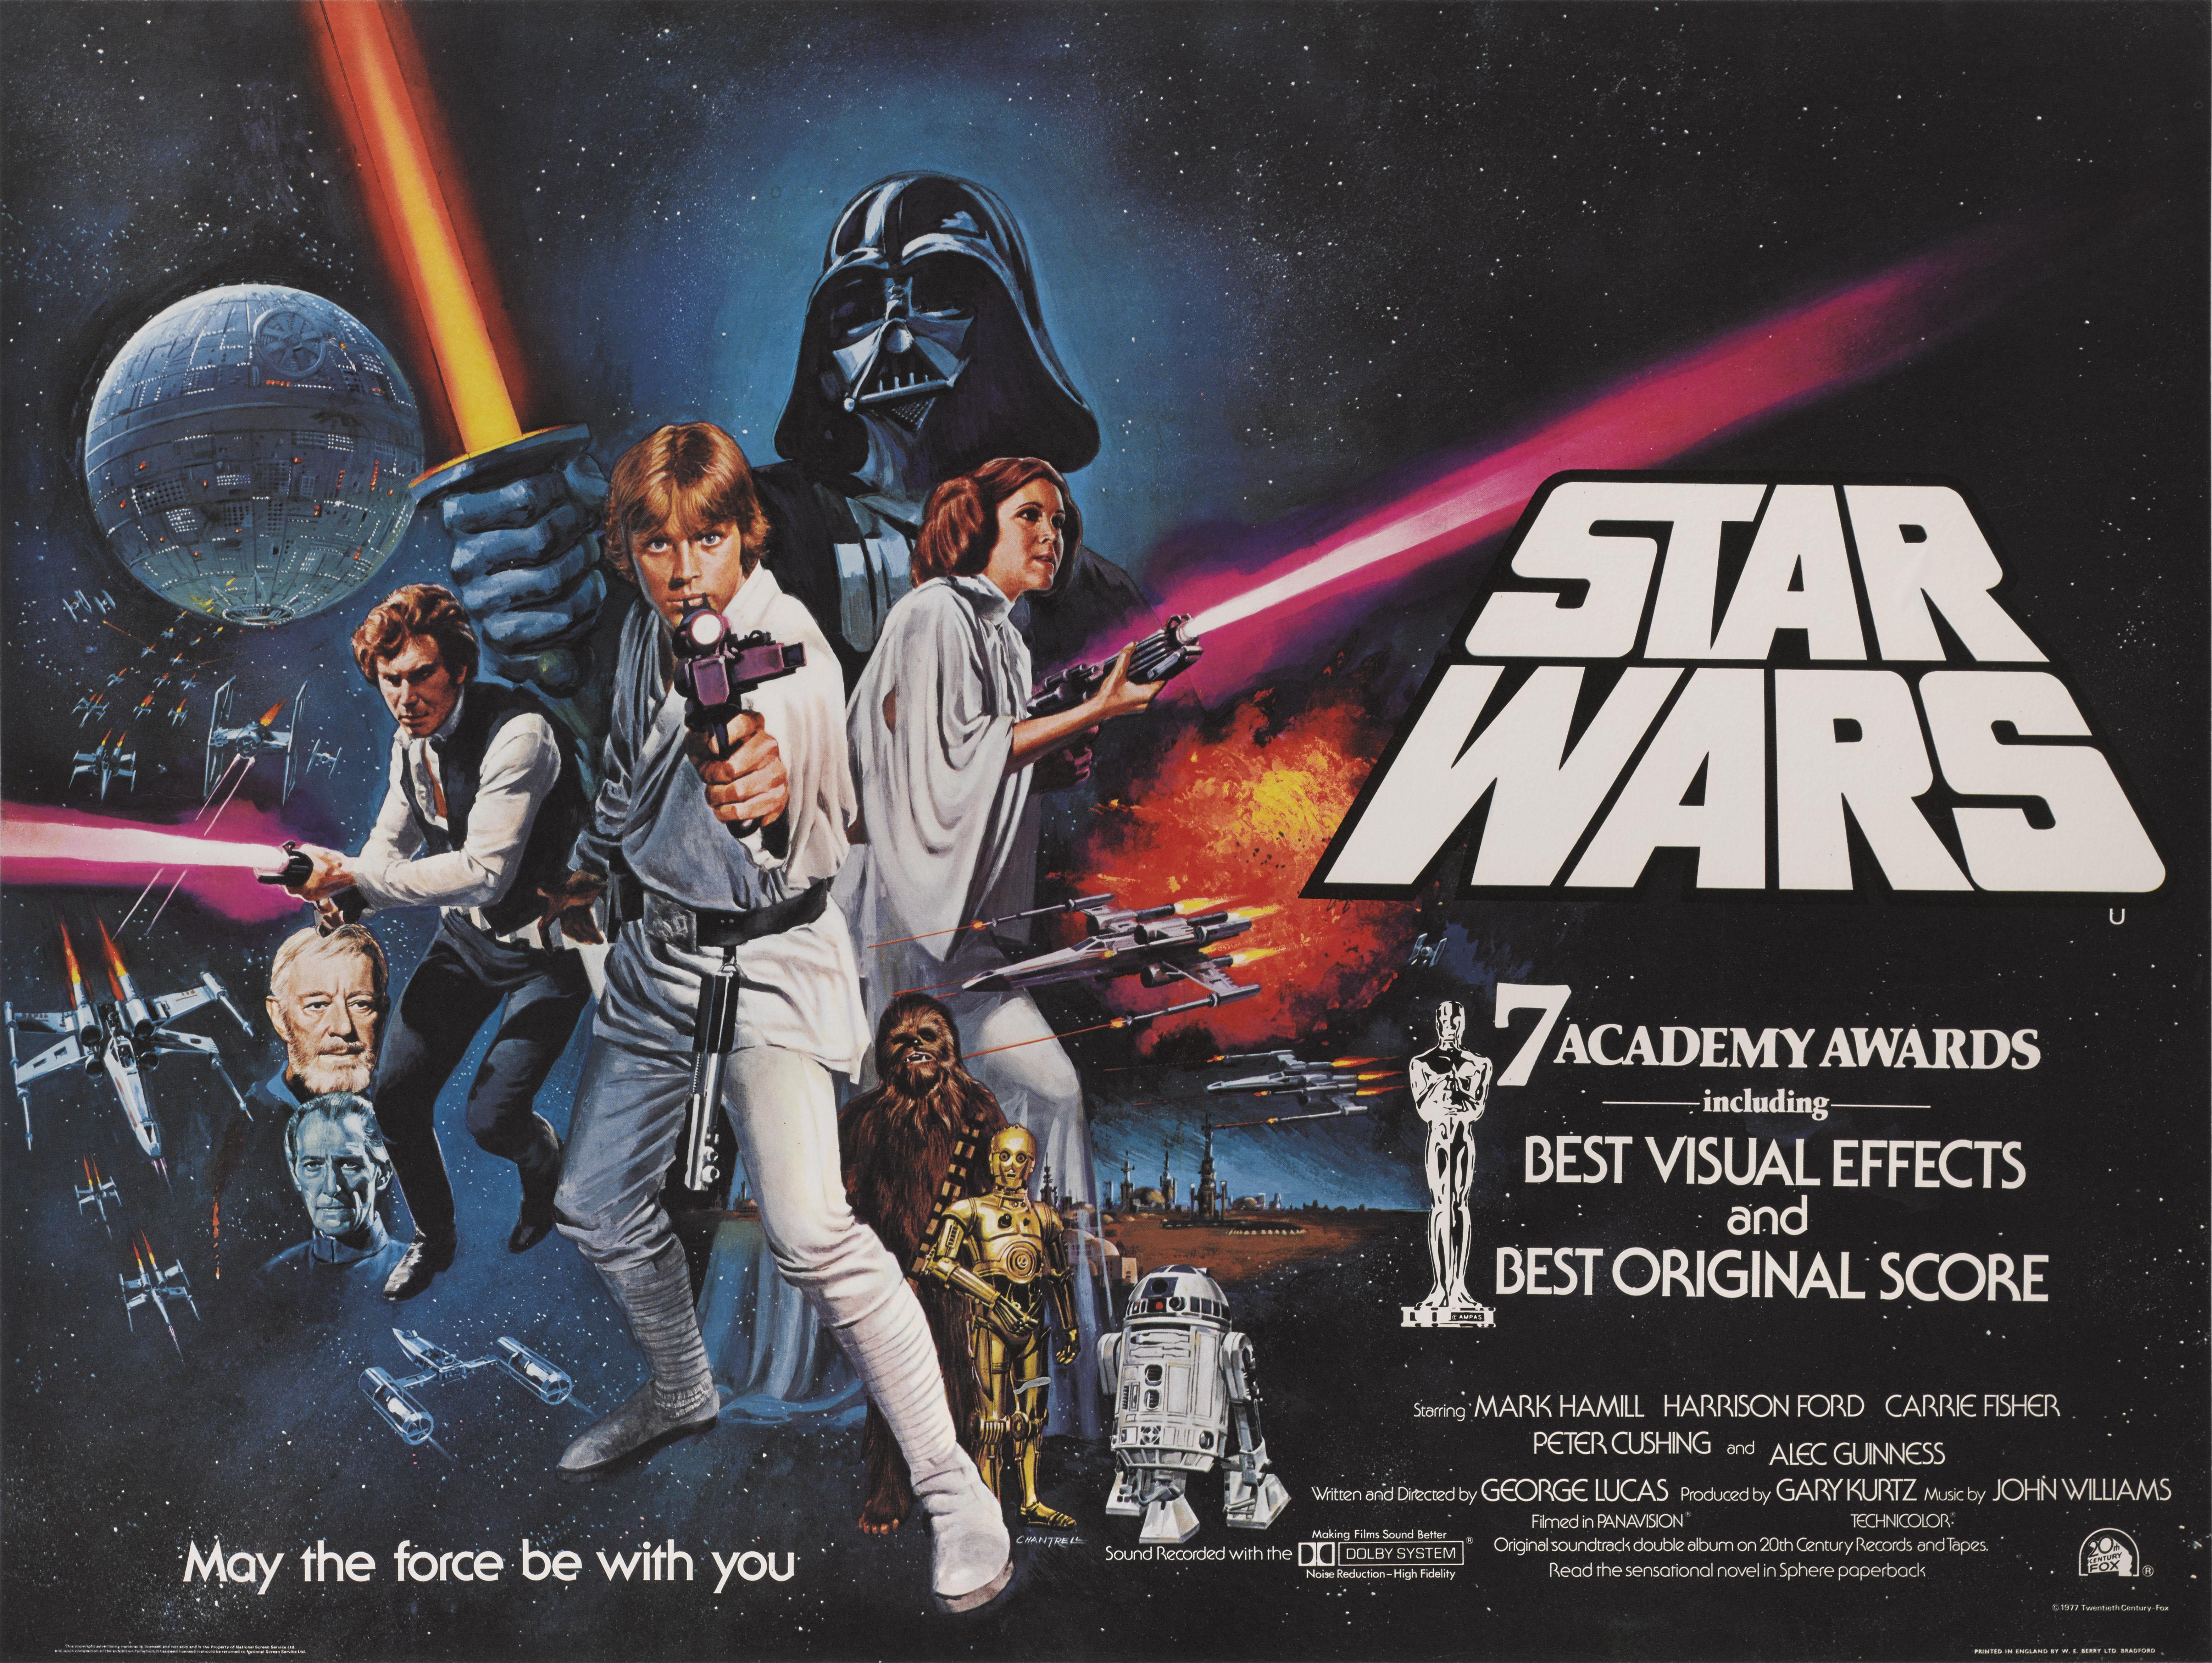 Originales britisches Filmplakat für Star Wars 1977.
George Lucas beauftragte Tom William Chantrell (1916-2001) mit der Gestaltung dieses britischen Plakats. Das Endergebnis gefiel Lucas so gut, dass er es für das C.C.-Plakat im amerikanischen Stil